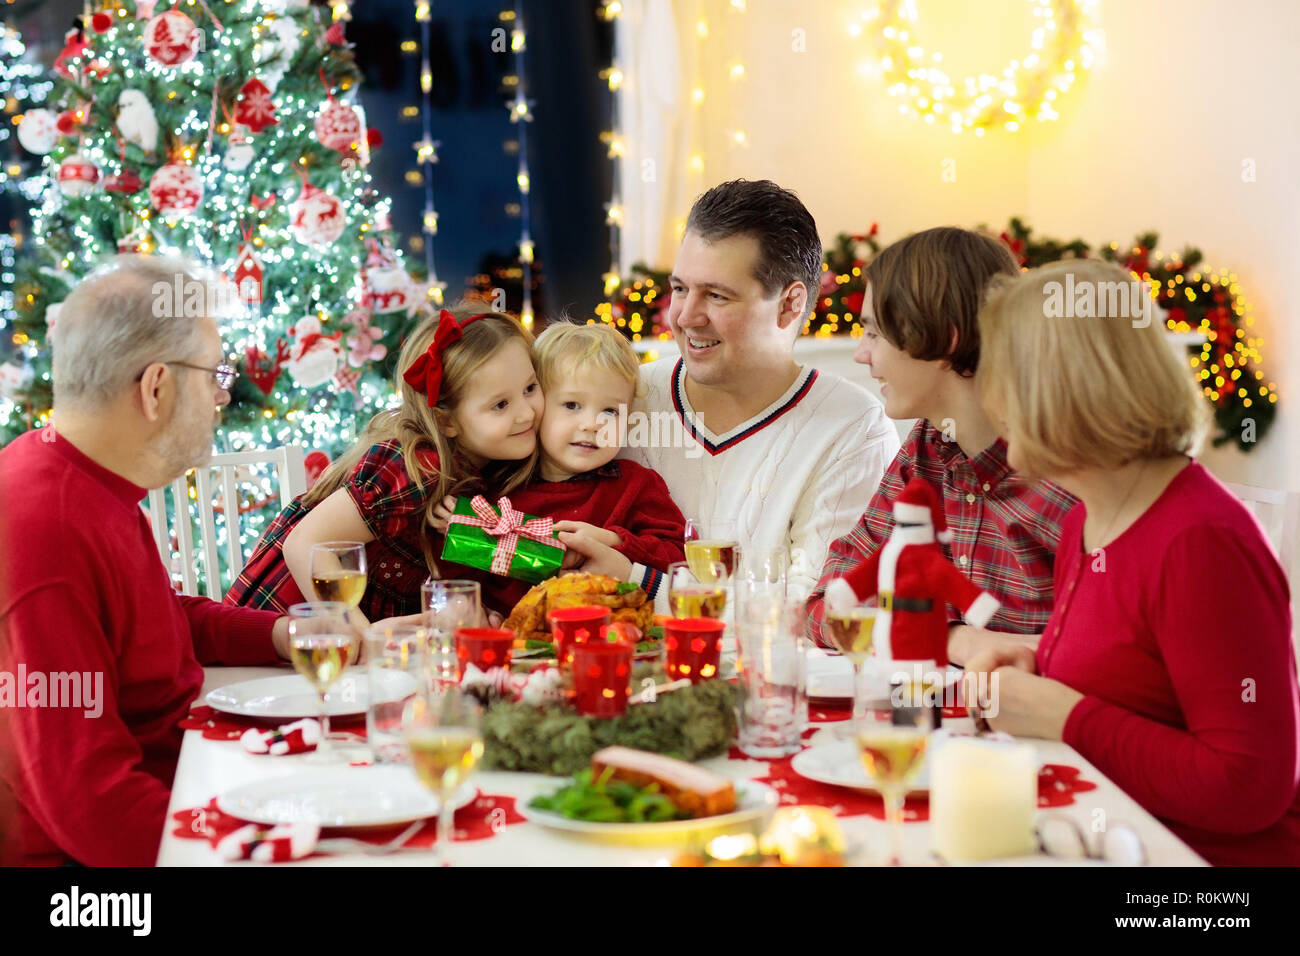 Pasti Di Natale.Famiglia Con Bambini A Mangiare La Cena Di Natale Al Camino E Decorate Albero Di Natale